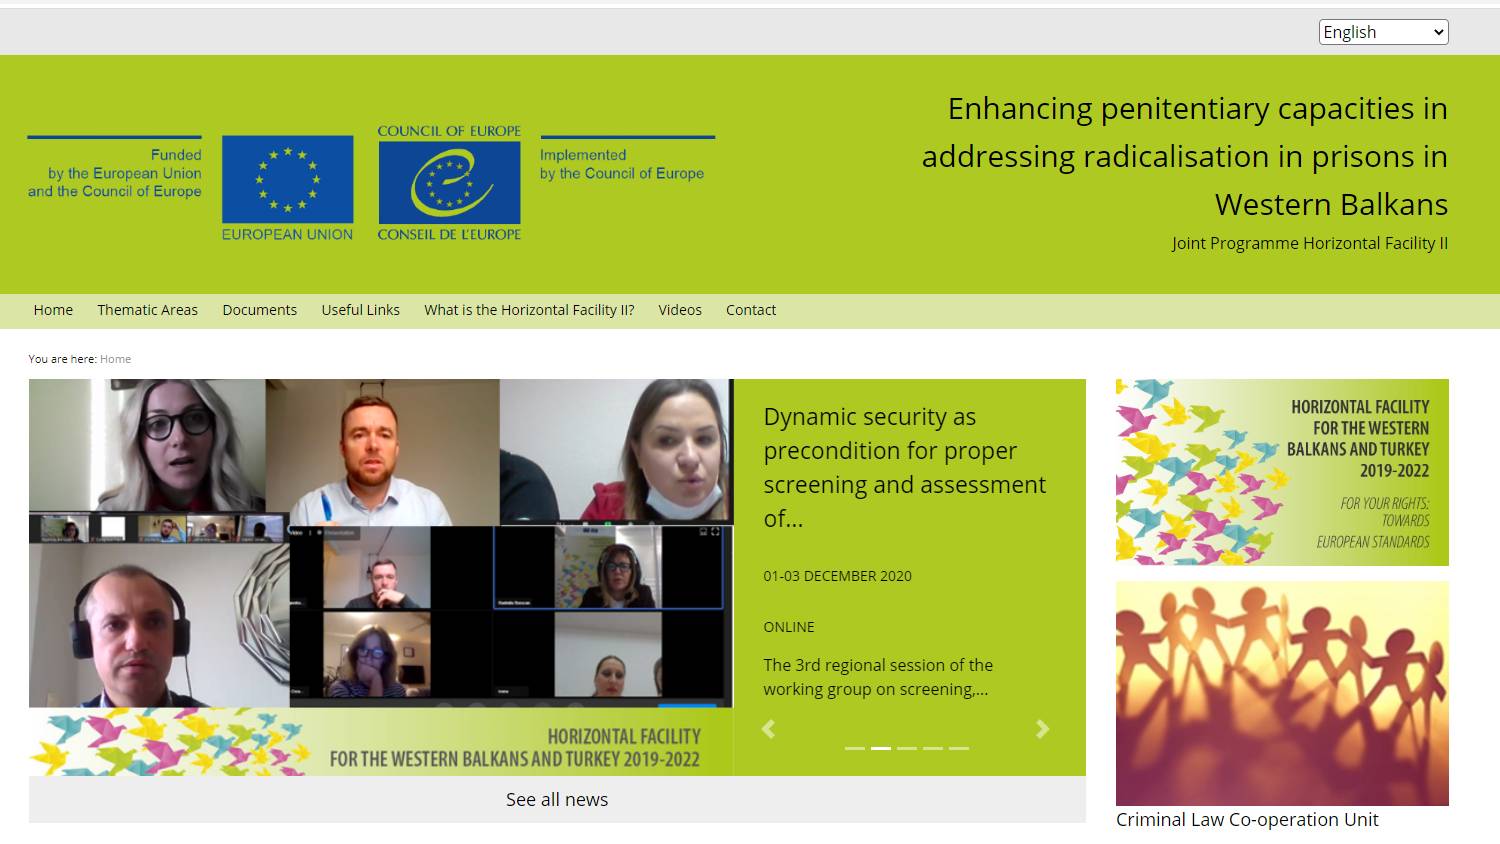 New website / web-platform on addressing radicalisation and violent extremism in prisons, launched